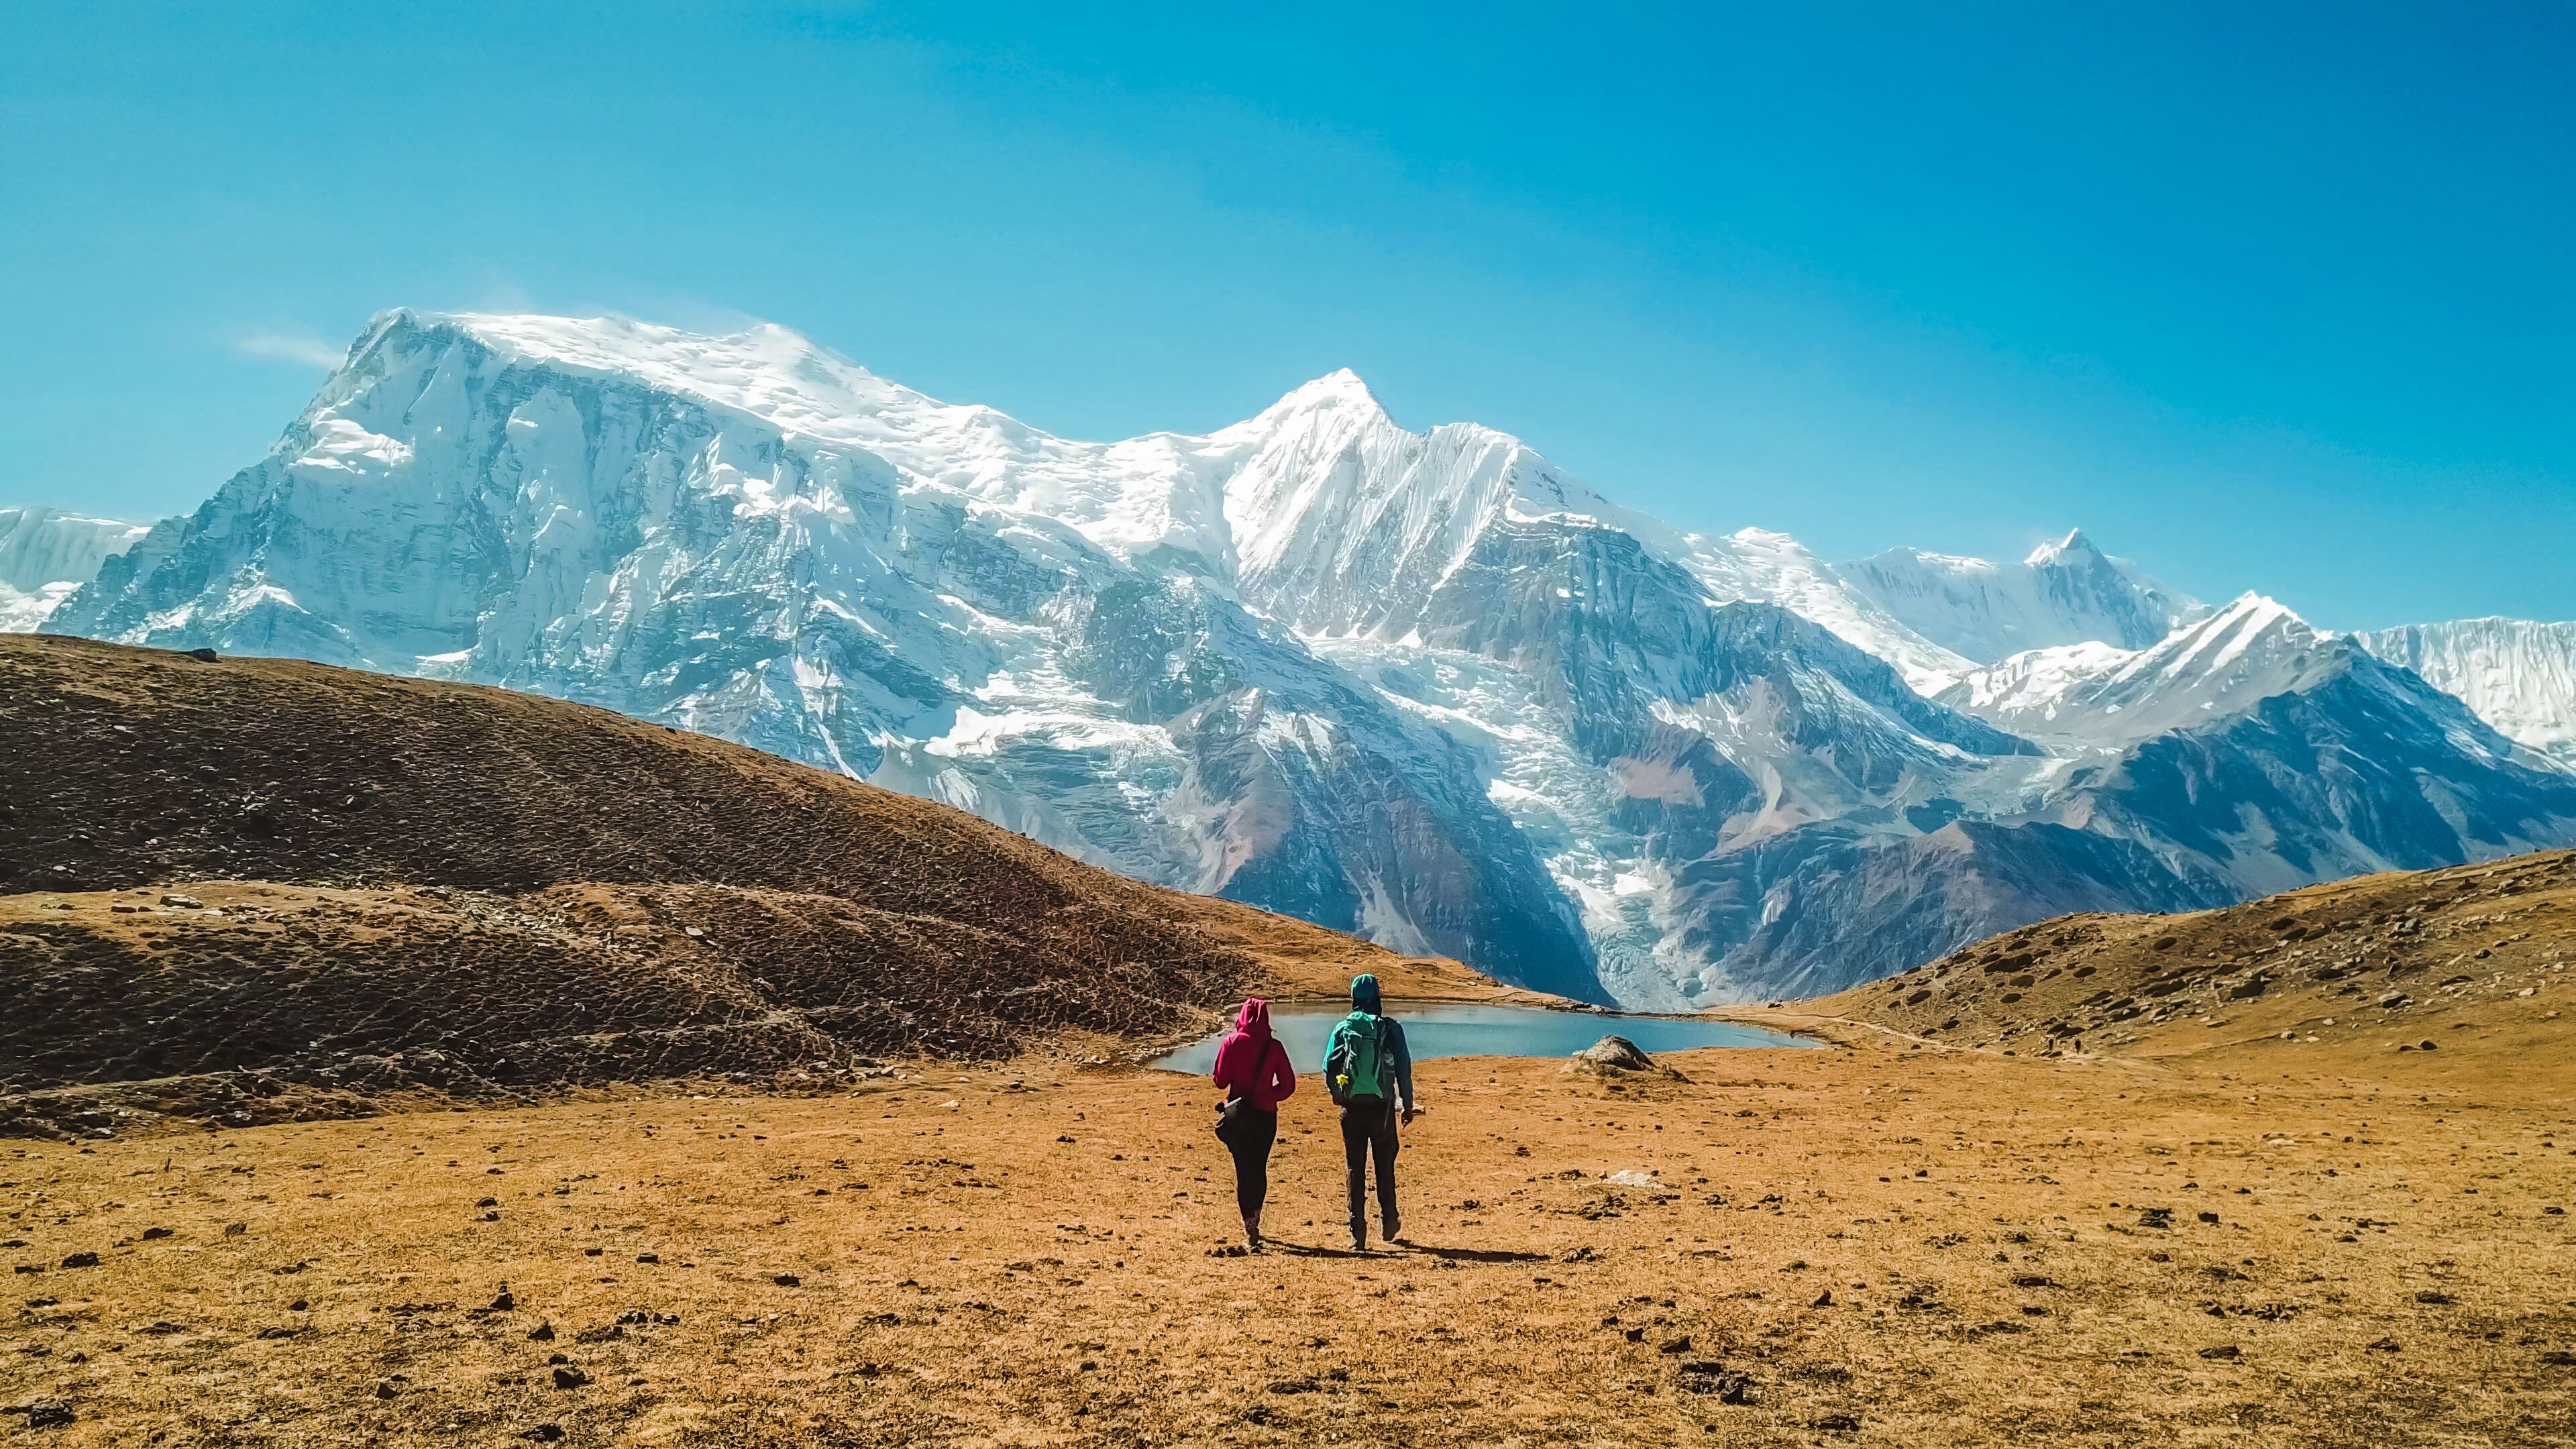 Dos senderistas en el Annapurna Circuit Trek.